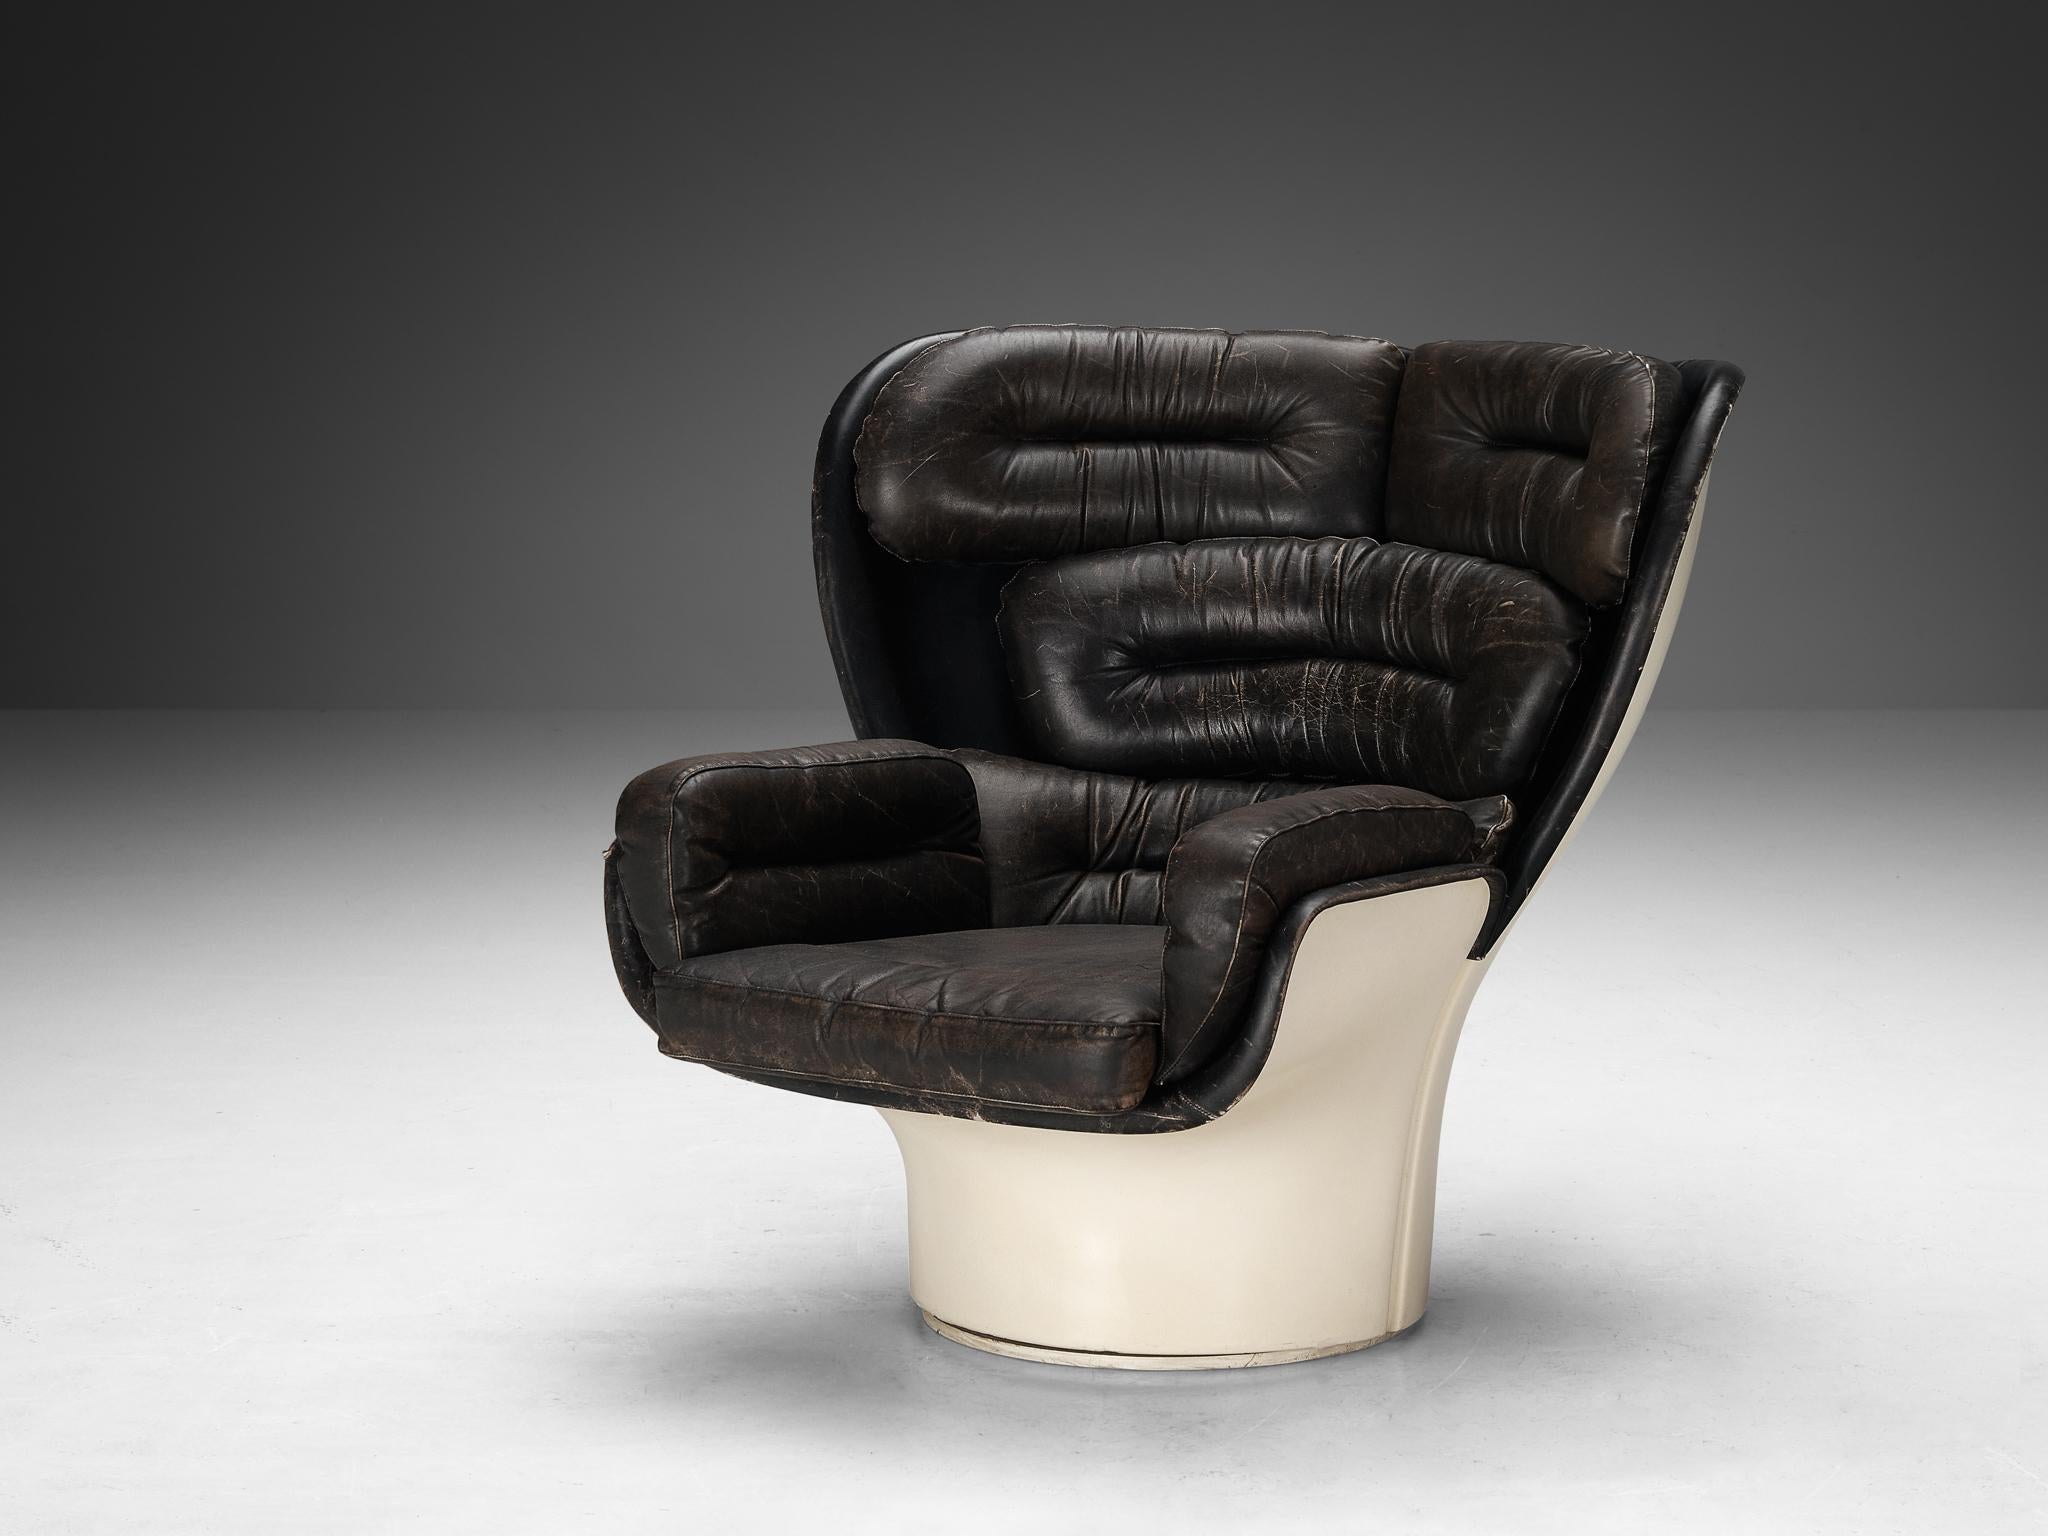 Joe Colombo for Comfort, chaise longue 'Elda', fibre de verre, cuir rouge, Italie, design 1963

La chaise Elda est l'une des créations les plus connues du designer italien Joe Colombo. Cette chaise longue est l'un des premiers designs utilisant en